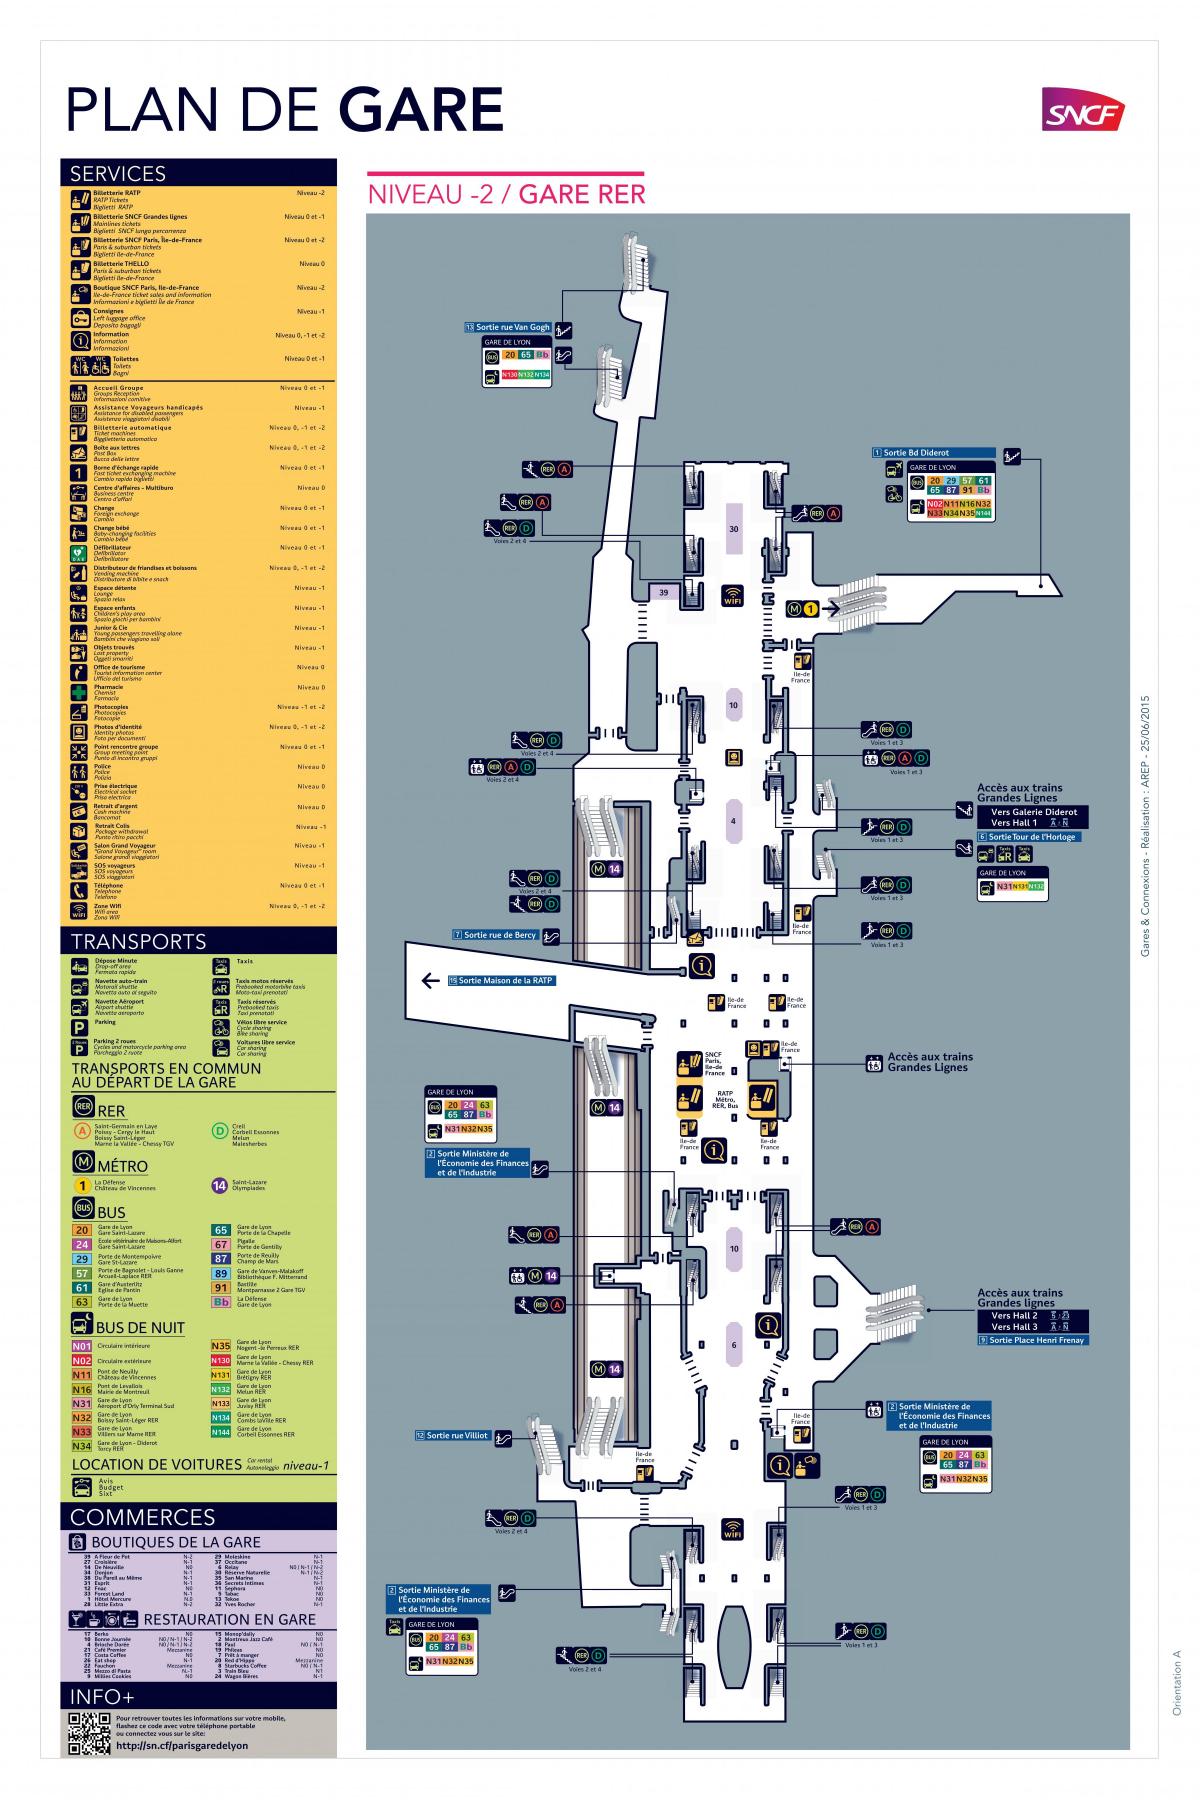 Mappa di Paris-Gare de Lyon RER